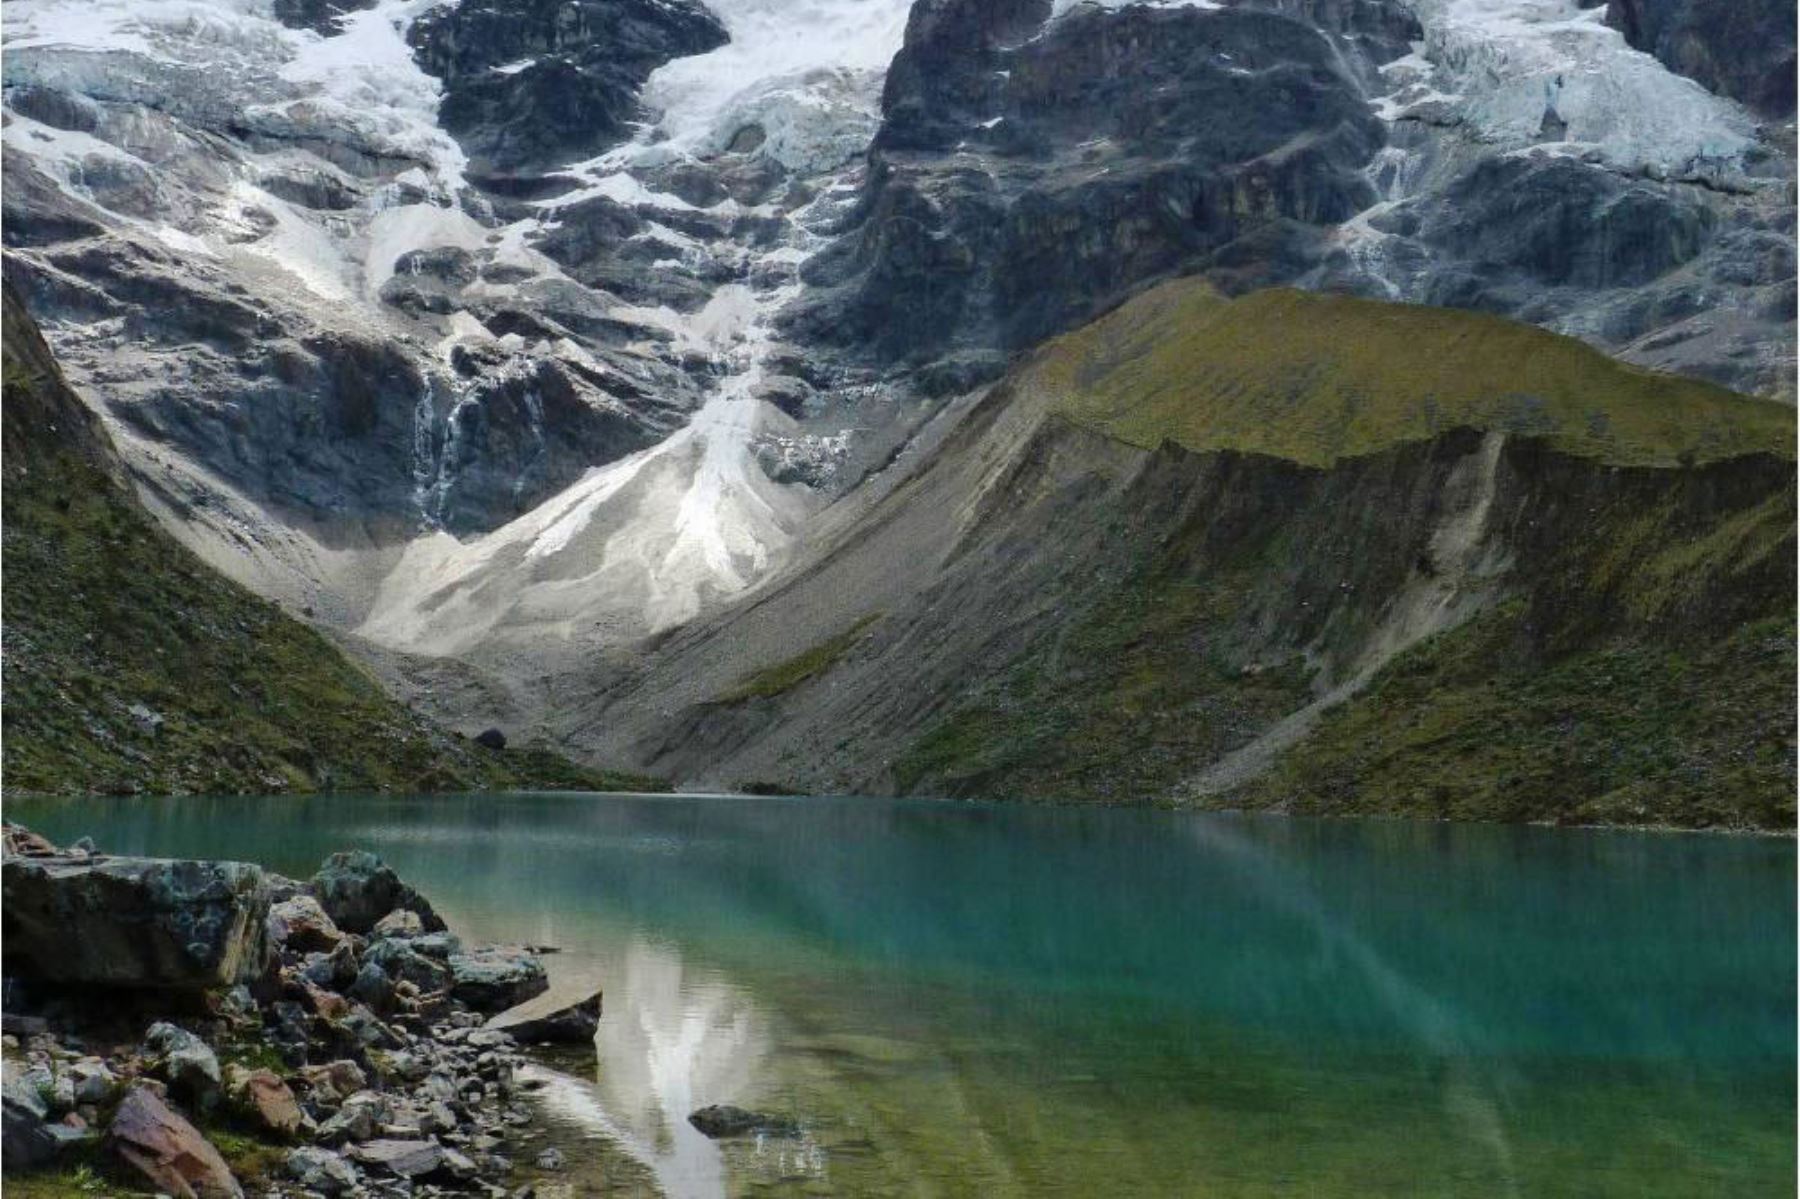 La laguna de Humantay, ubicada en la provincia cusqueña de Anta y que forma parte de la cordillera de Vilcabamba, está próxima convertirse en el tercer destino turístico más visitado por turistas nacionales y extranjeros, después de Machu Picchu y la montaña de Vinicunca